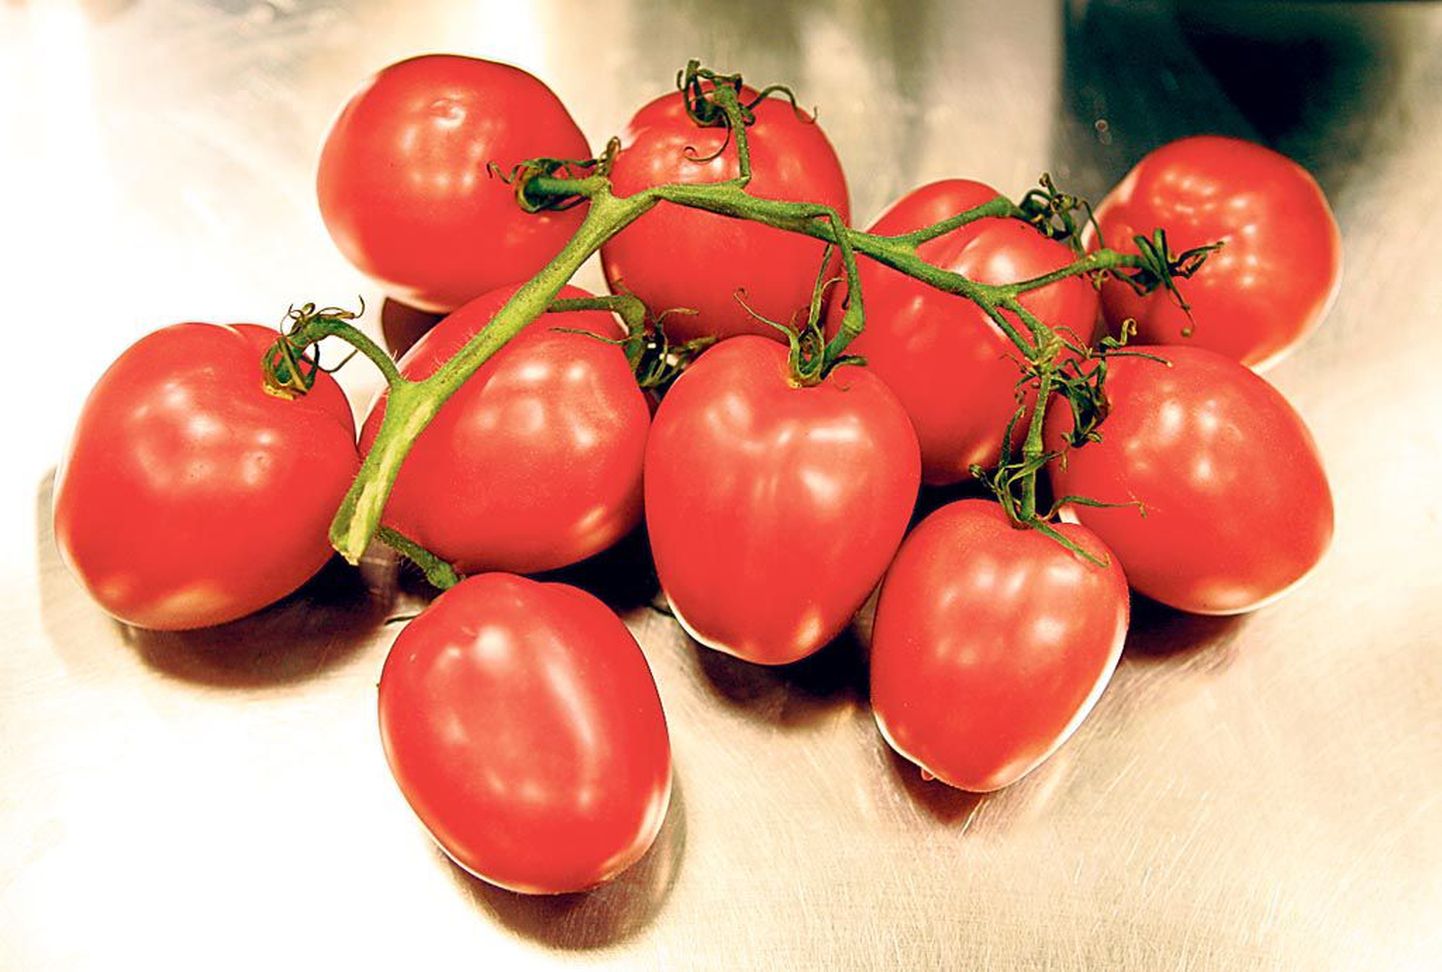 Briti teadlaste hinnangul on tomat inimese organismile kõige kasulikum toiduaine.